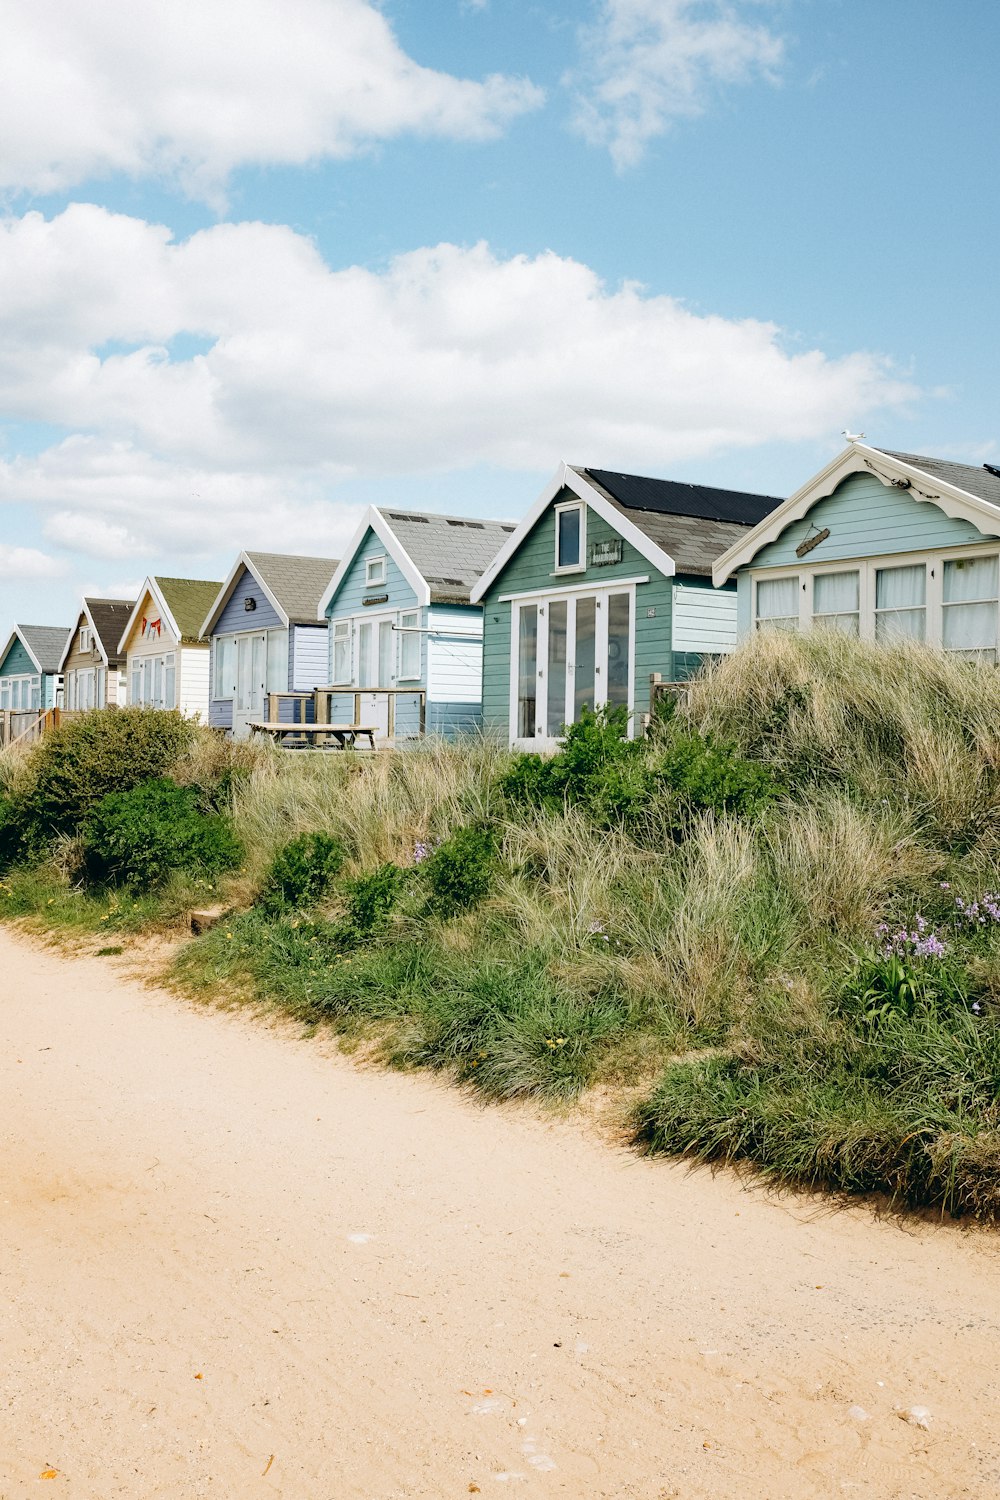 a row of beach houses on a sandy beach